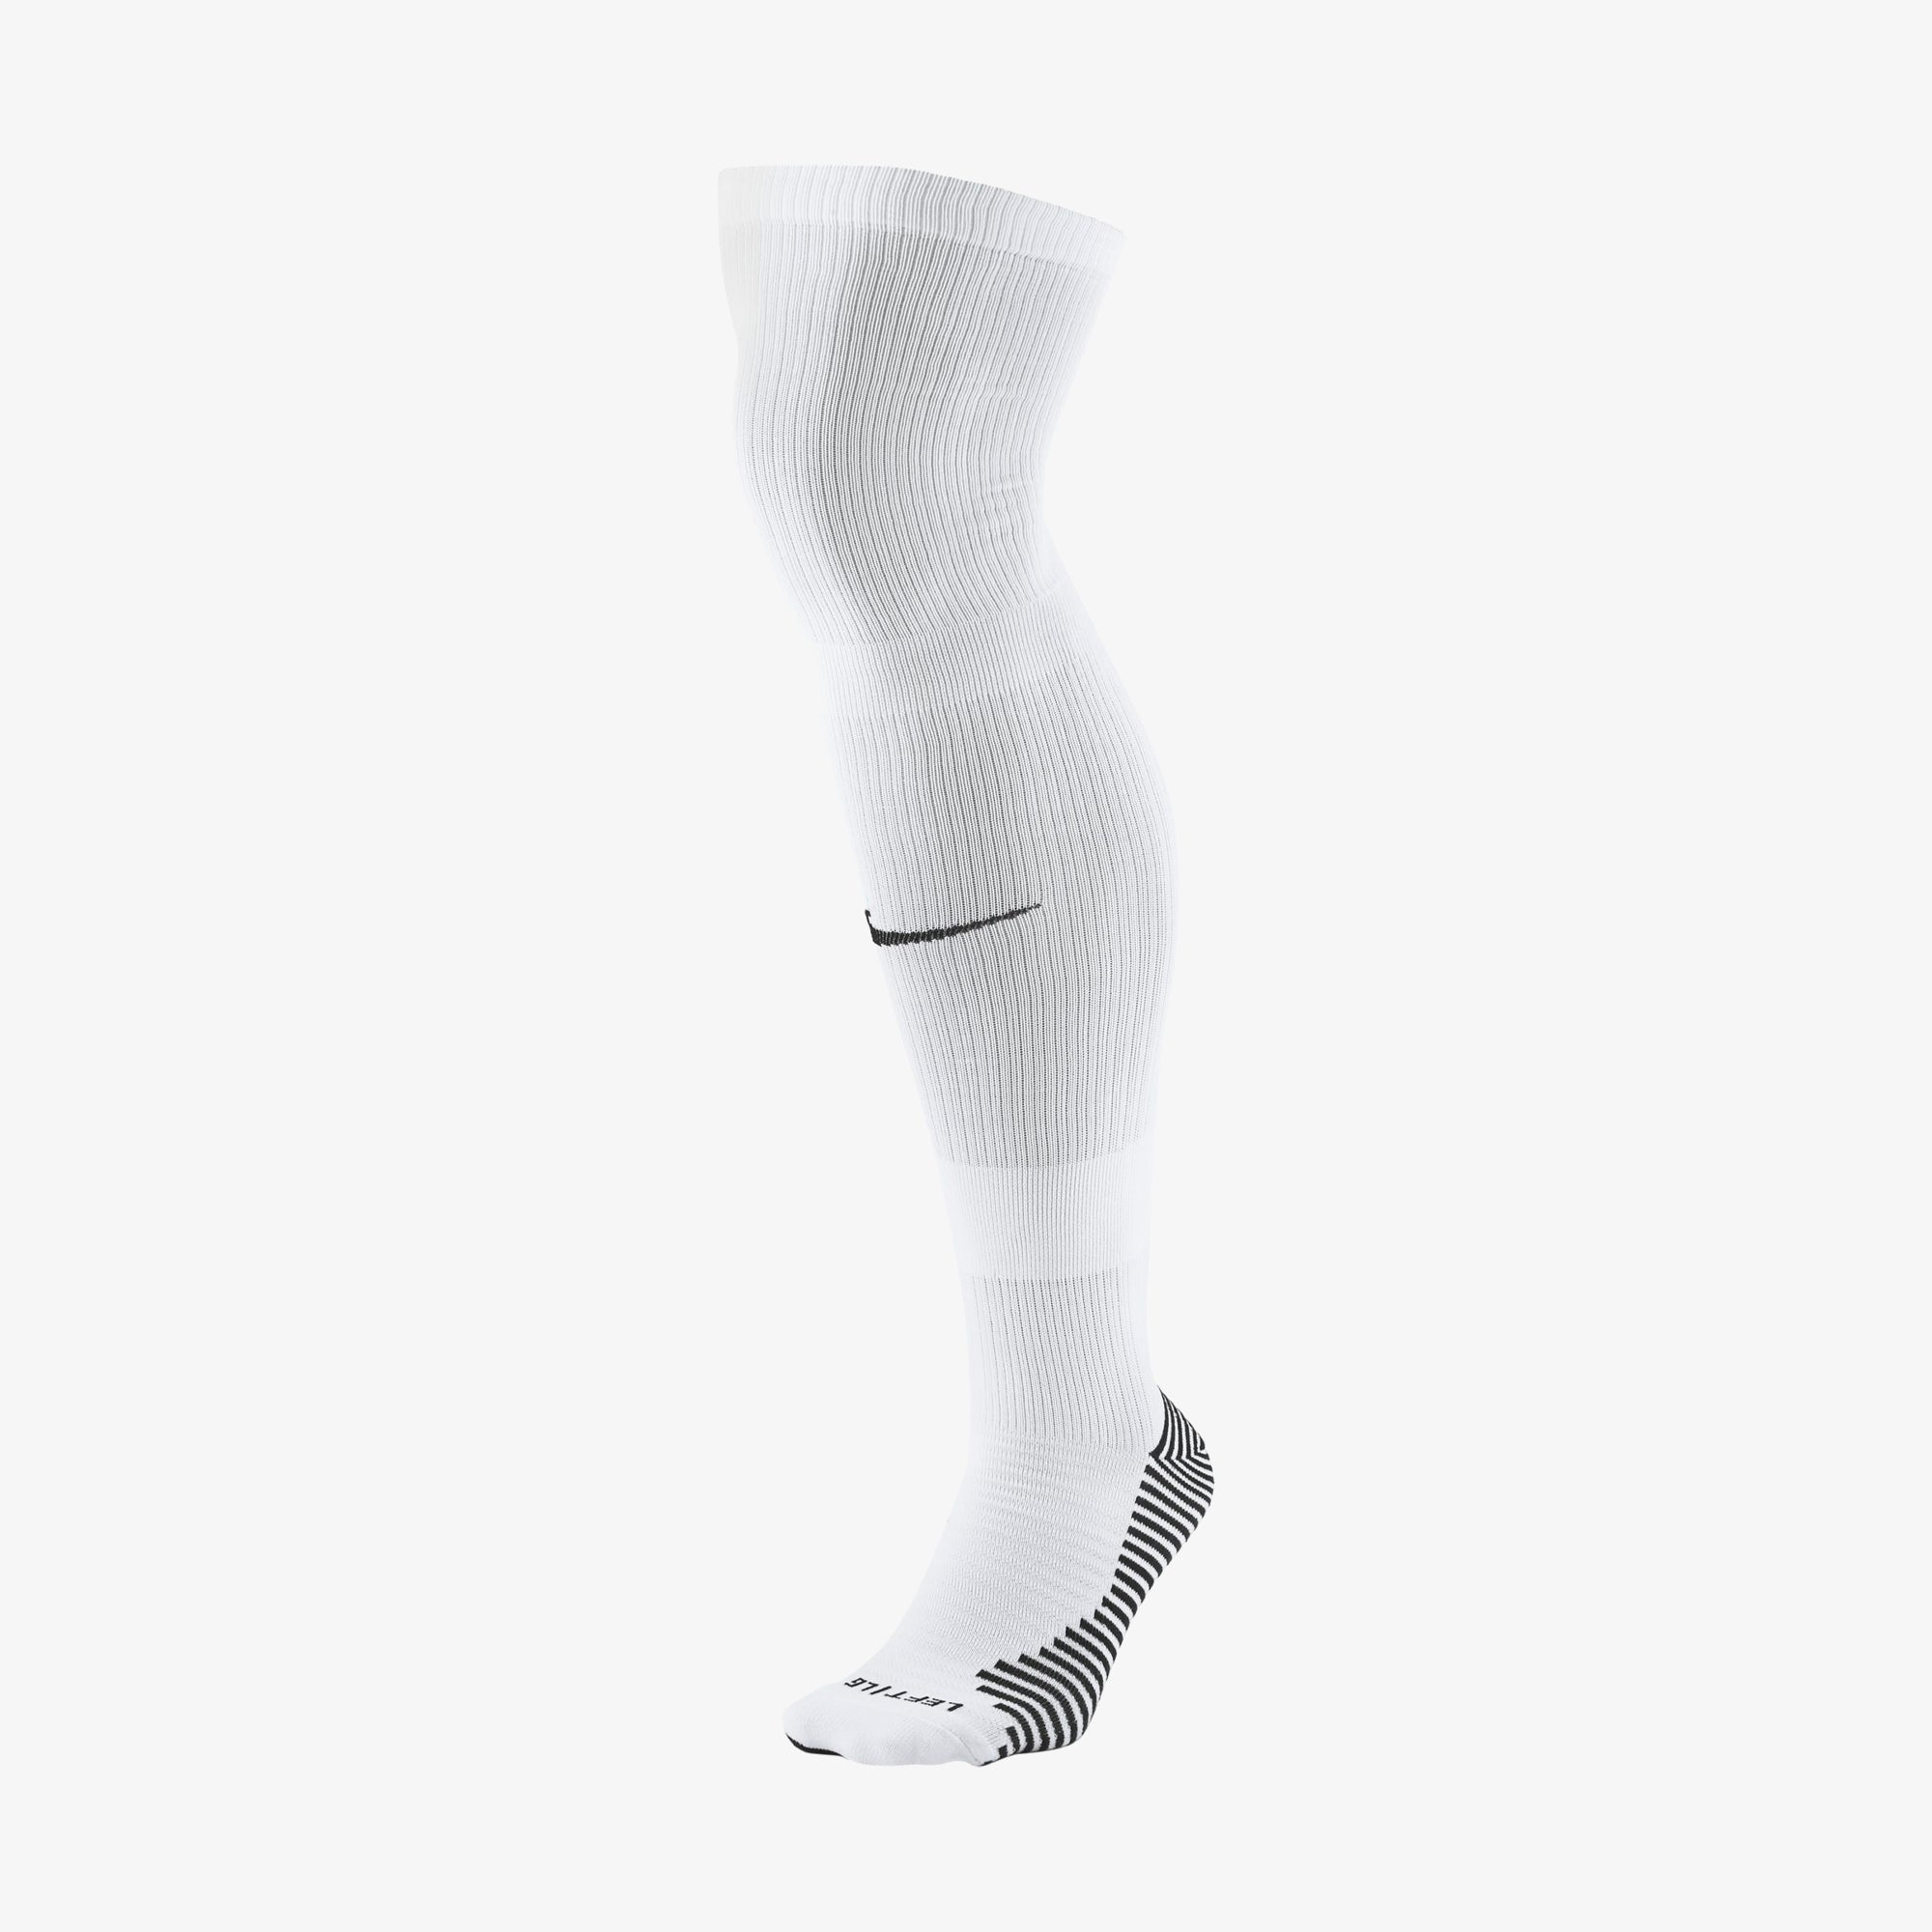 stad Beweegt niet rollen Nike MatchFit Soccer Knee-High Socks